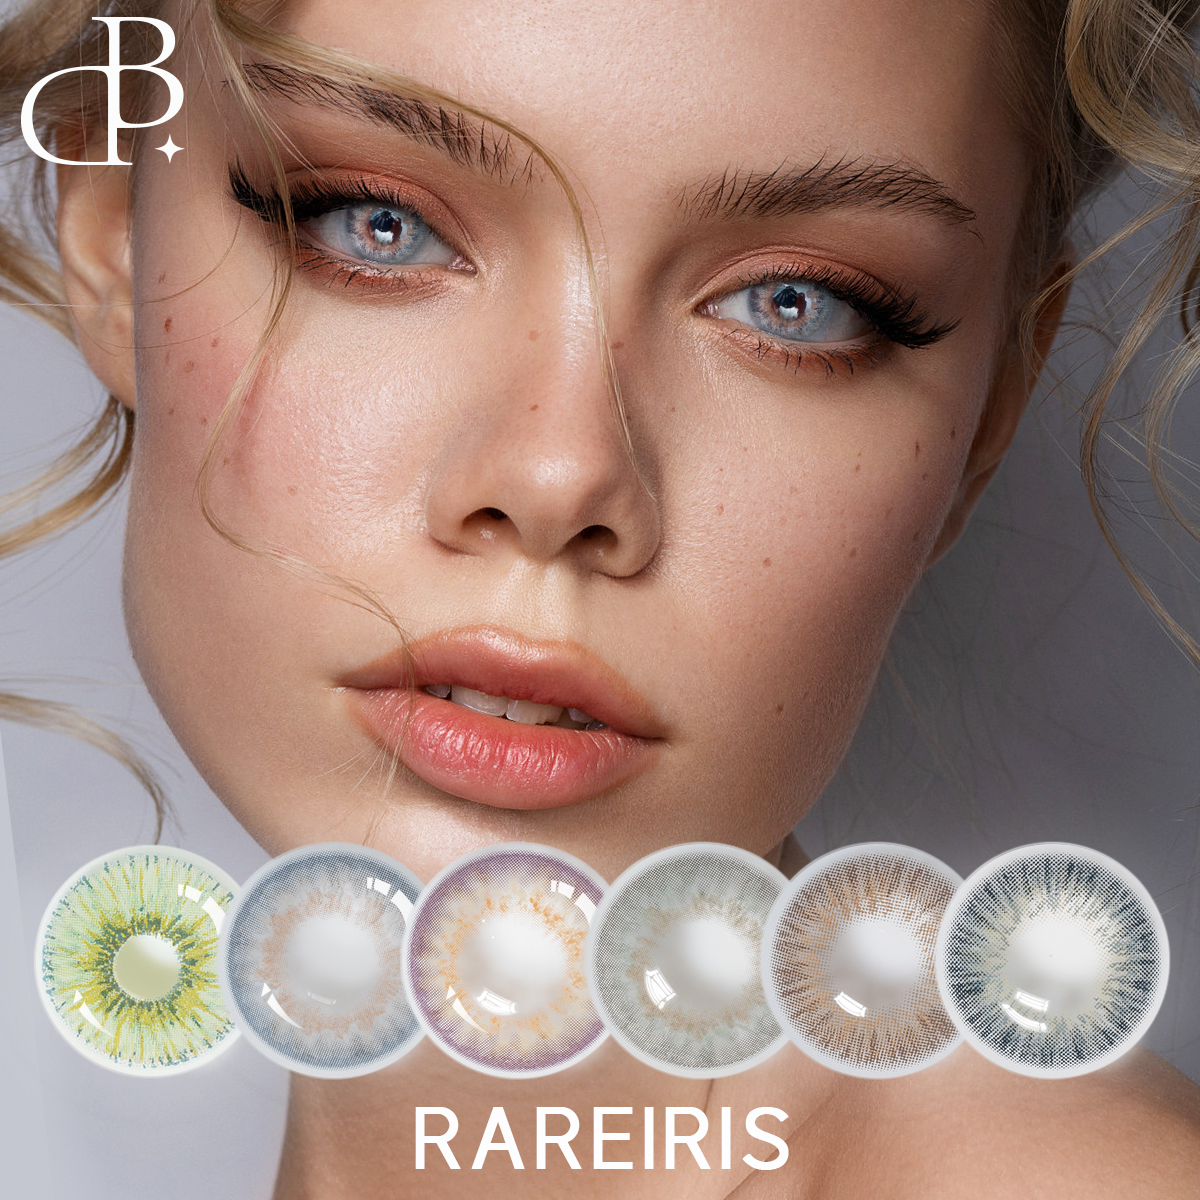 RAREIRIS Venta caliente 1 año lentes de contacto de color lentes de contacto al por mayor lentes de contacto coloreados para ojos